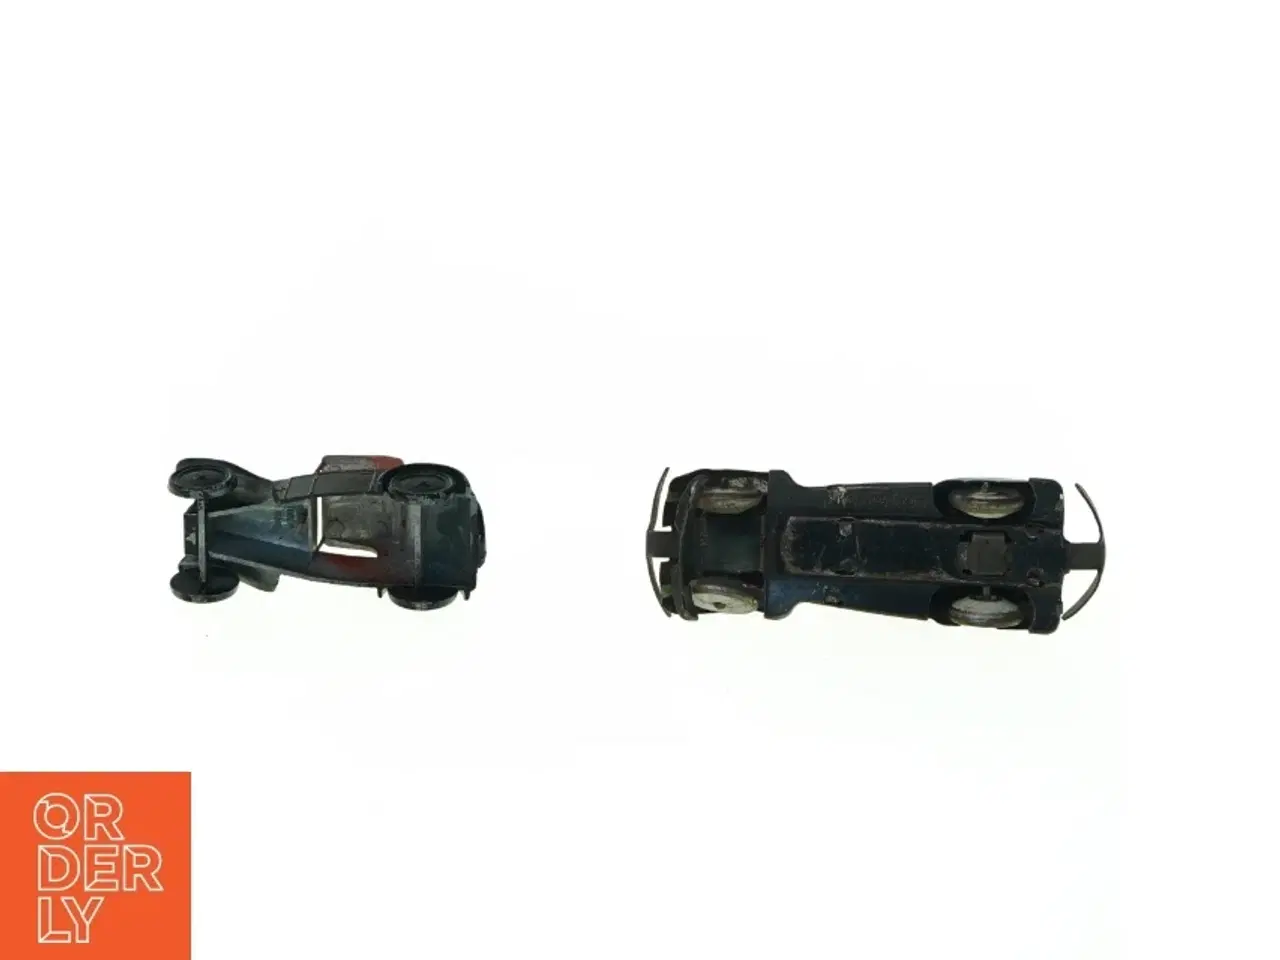 Billede 3 - Gamle biler (str. 10 x 3 cm)